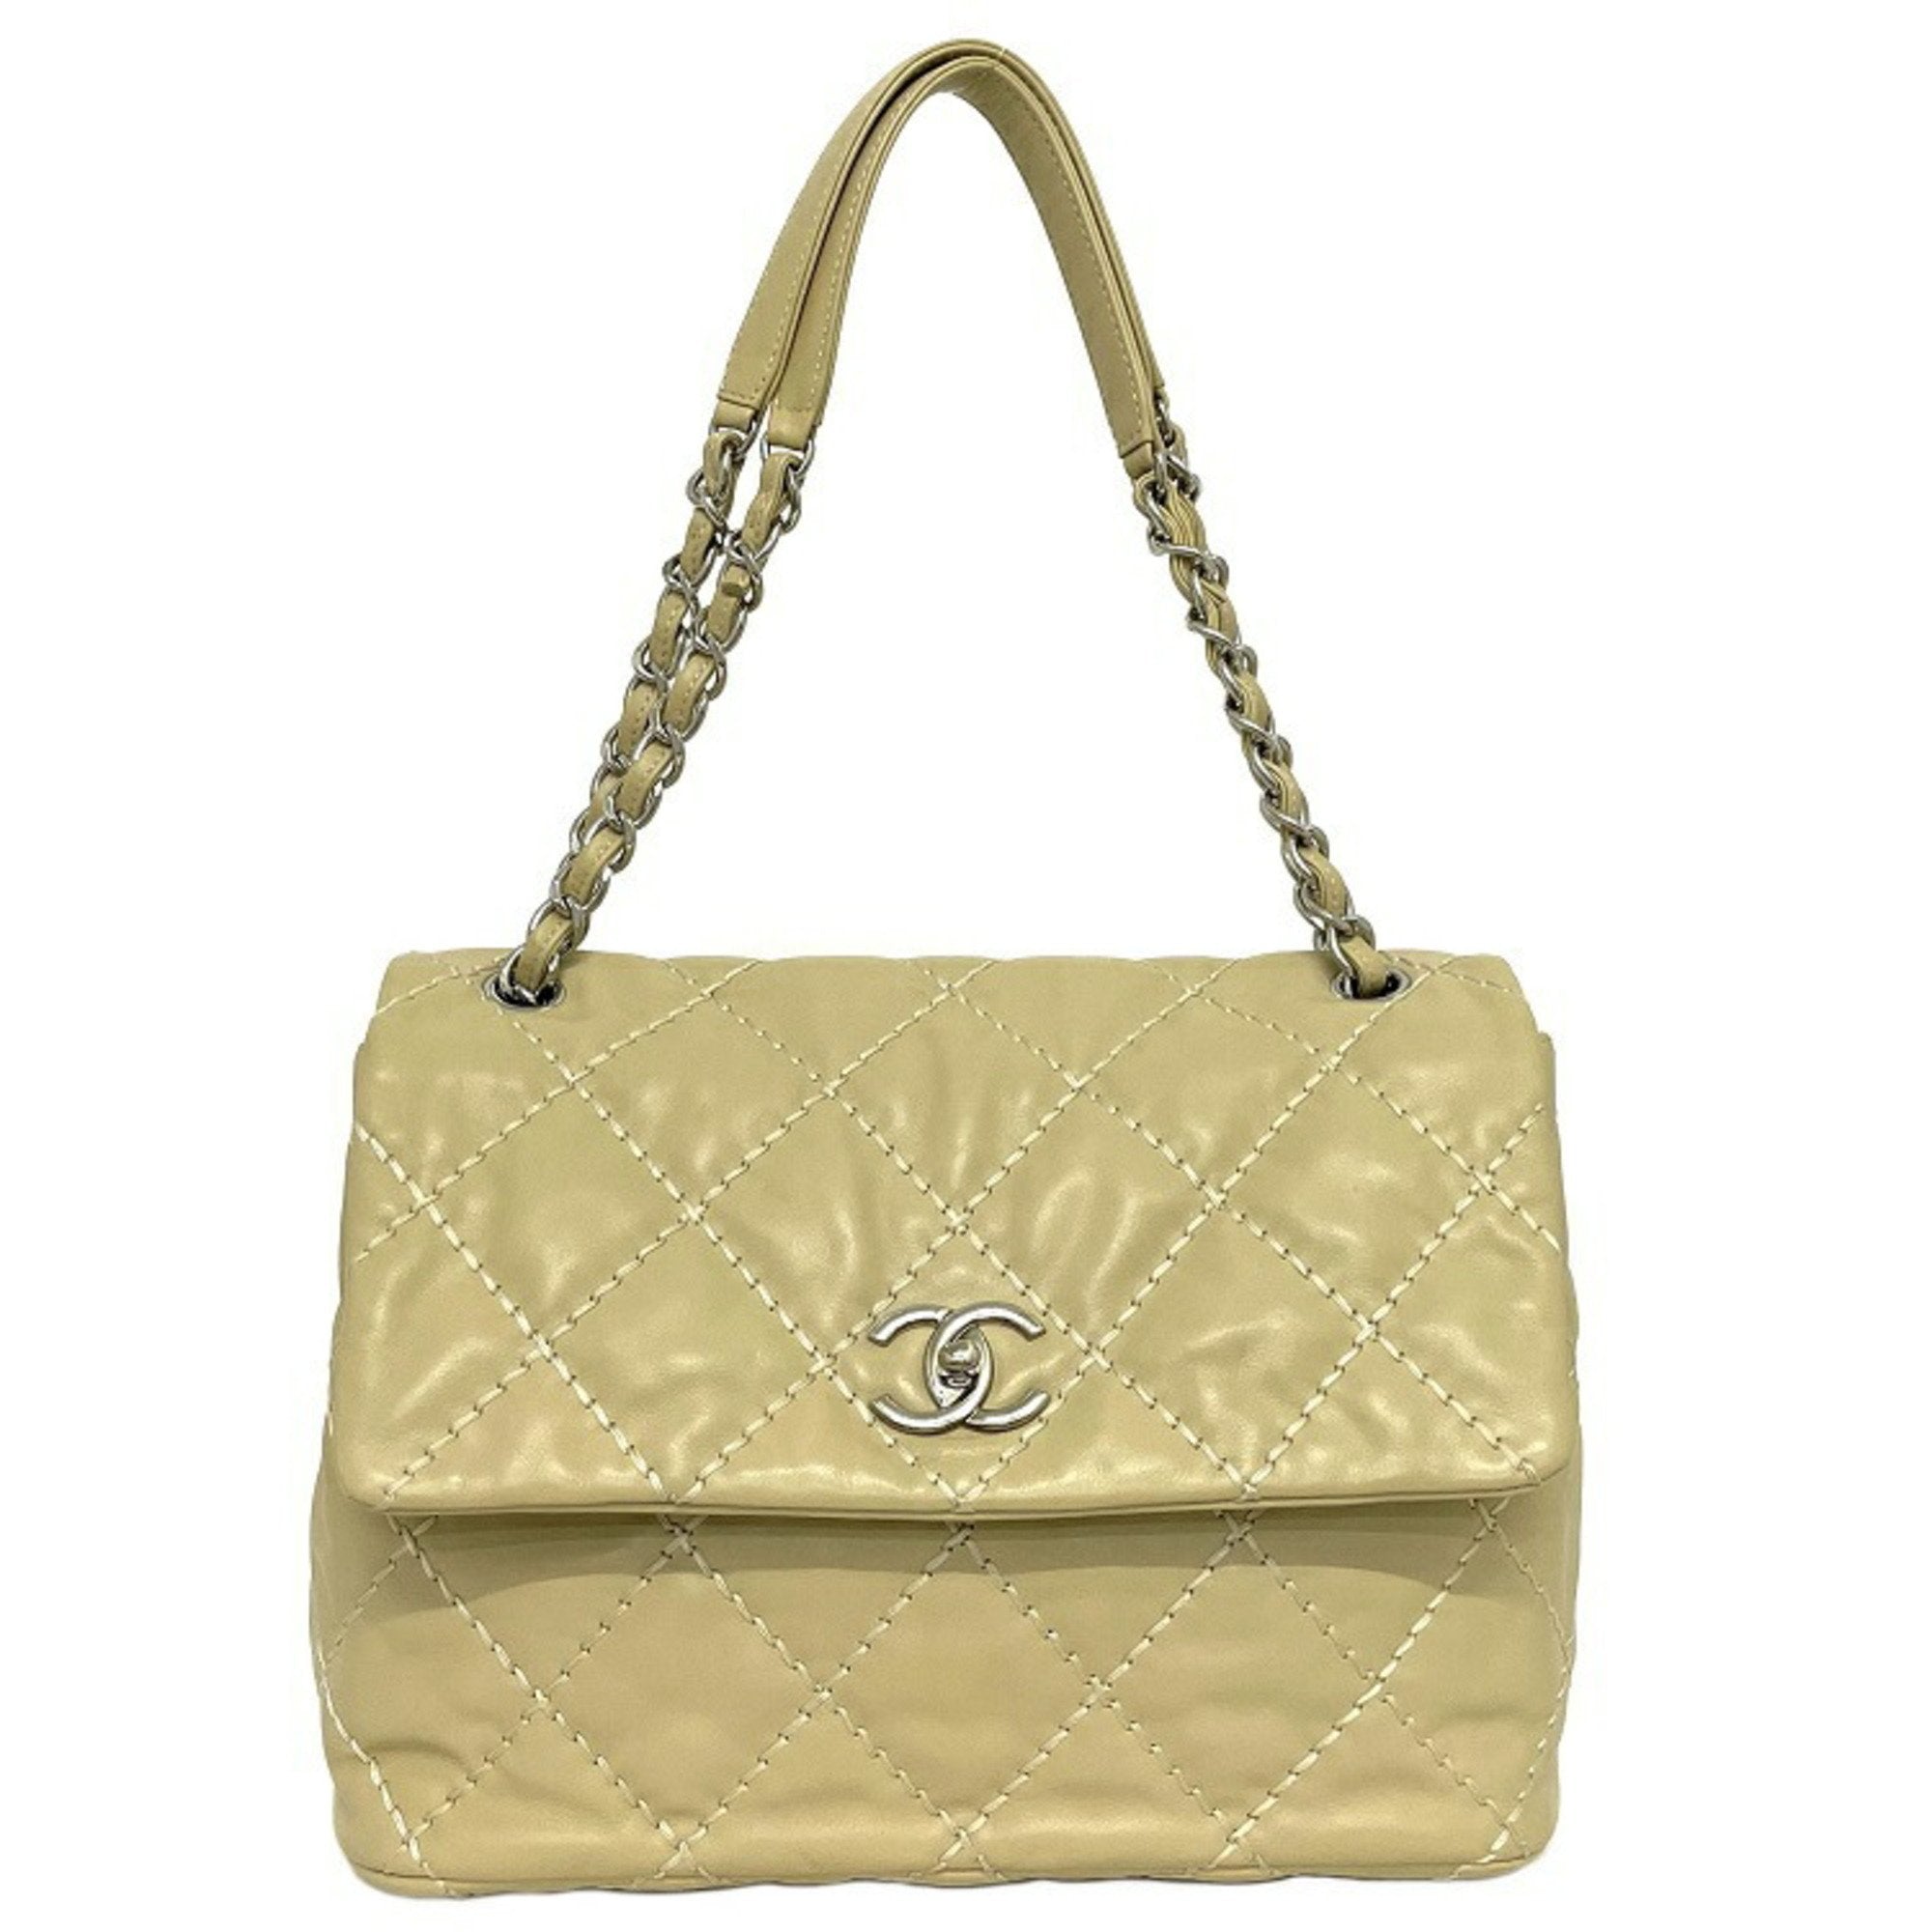 Chanel Chain Shoulder Bag Beige Silver Wild Stitch Lambskin Leather 17